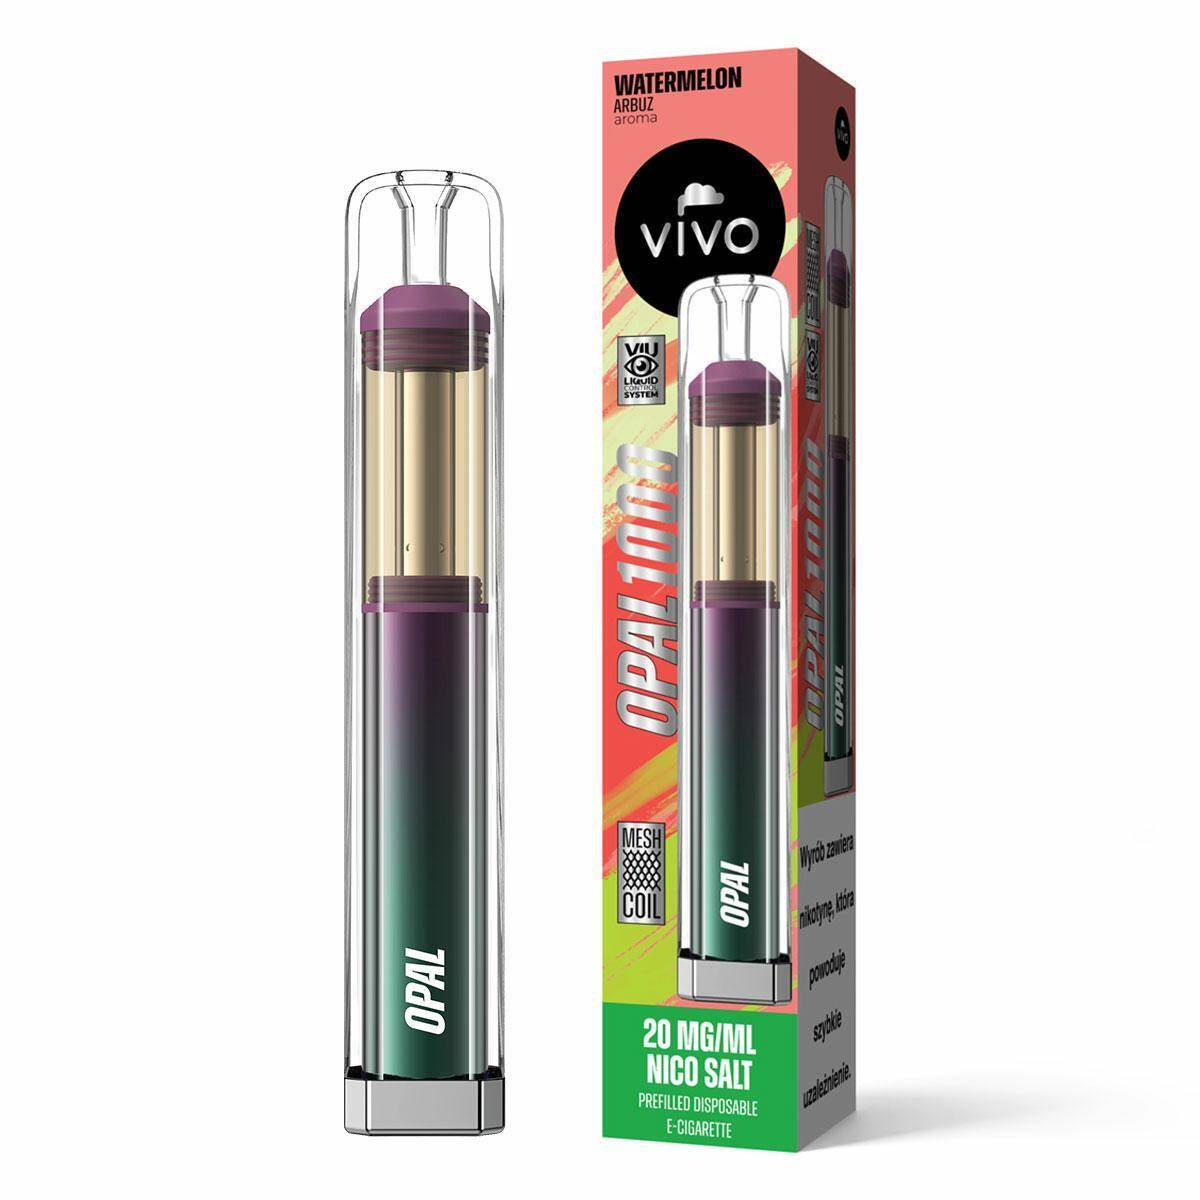 Disposable e-cigarette VIVO OPAL - Watermelon 20mg